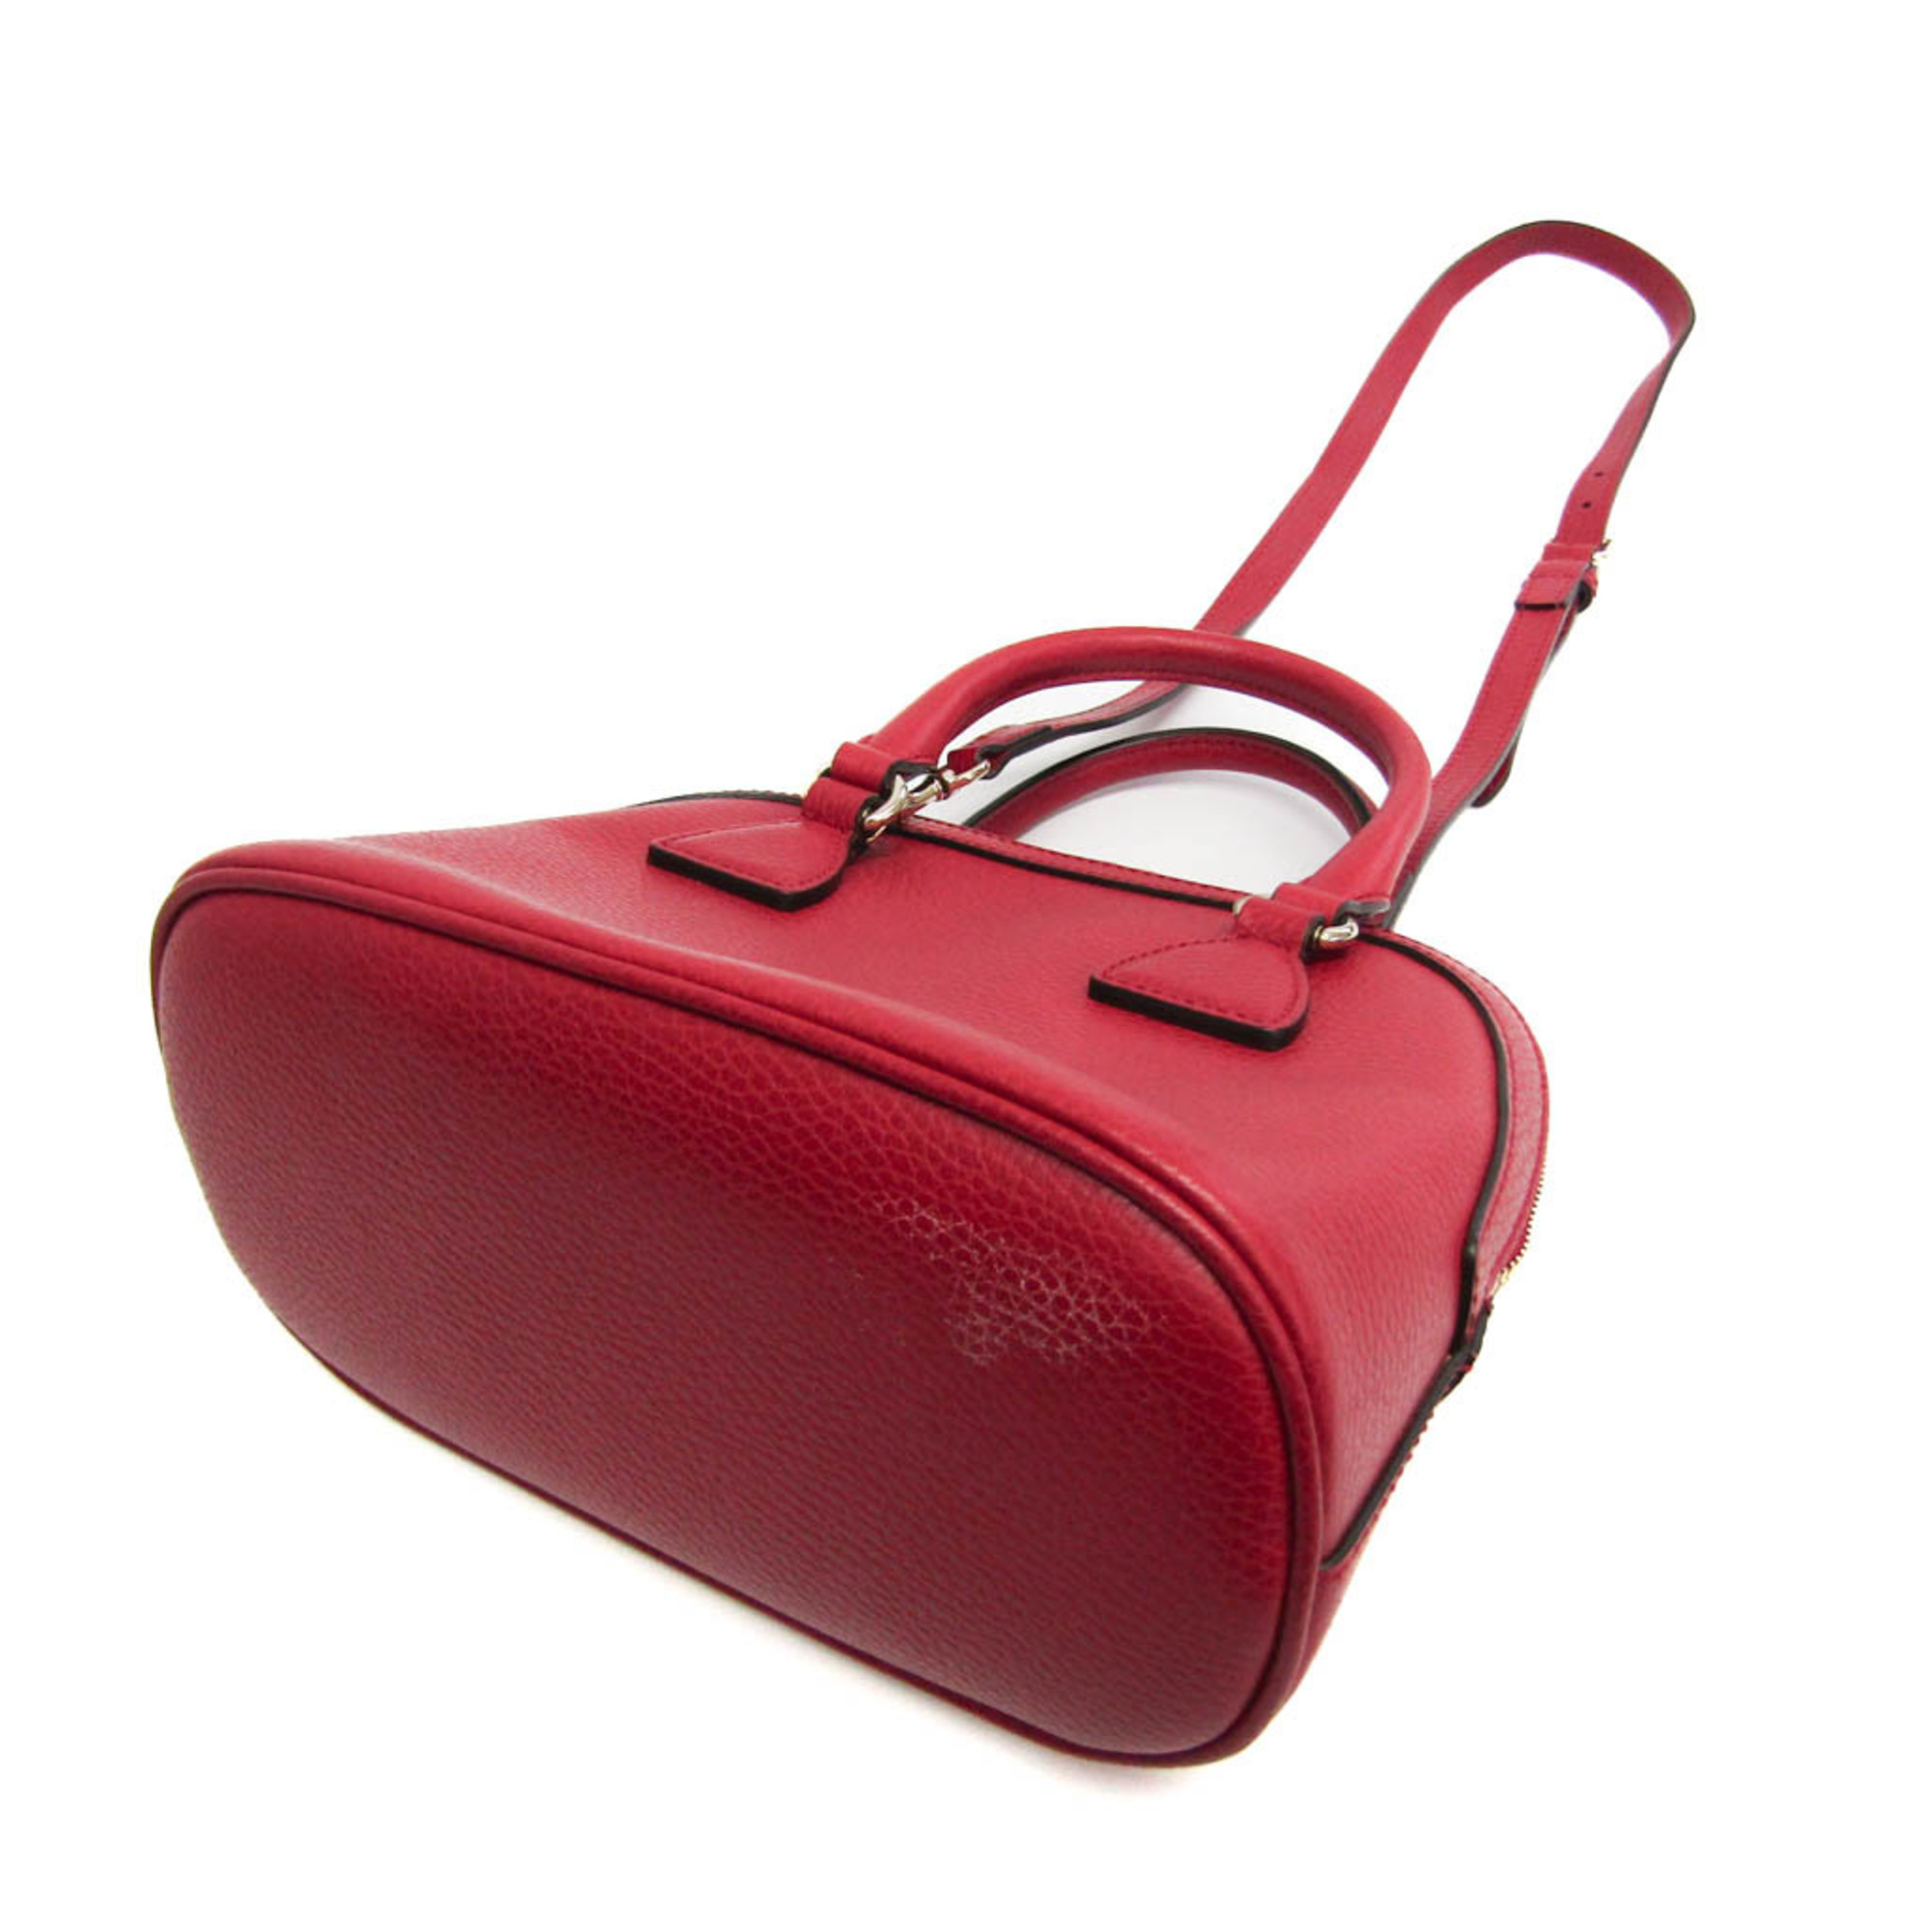 Gucci 449661 Women's Leather Handbag,Shoulder Bag Red Color